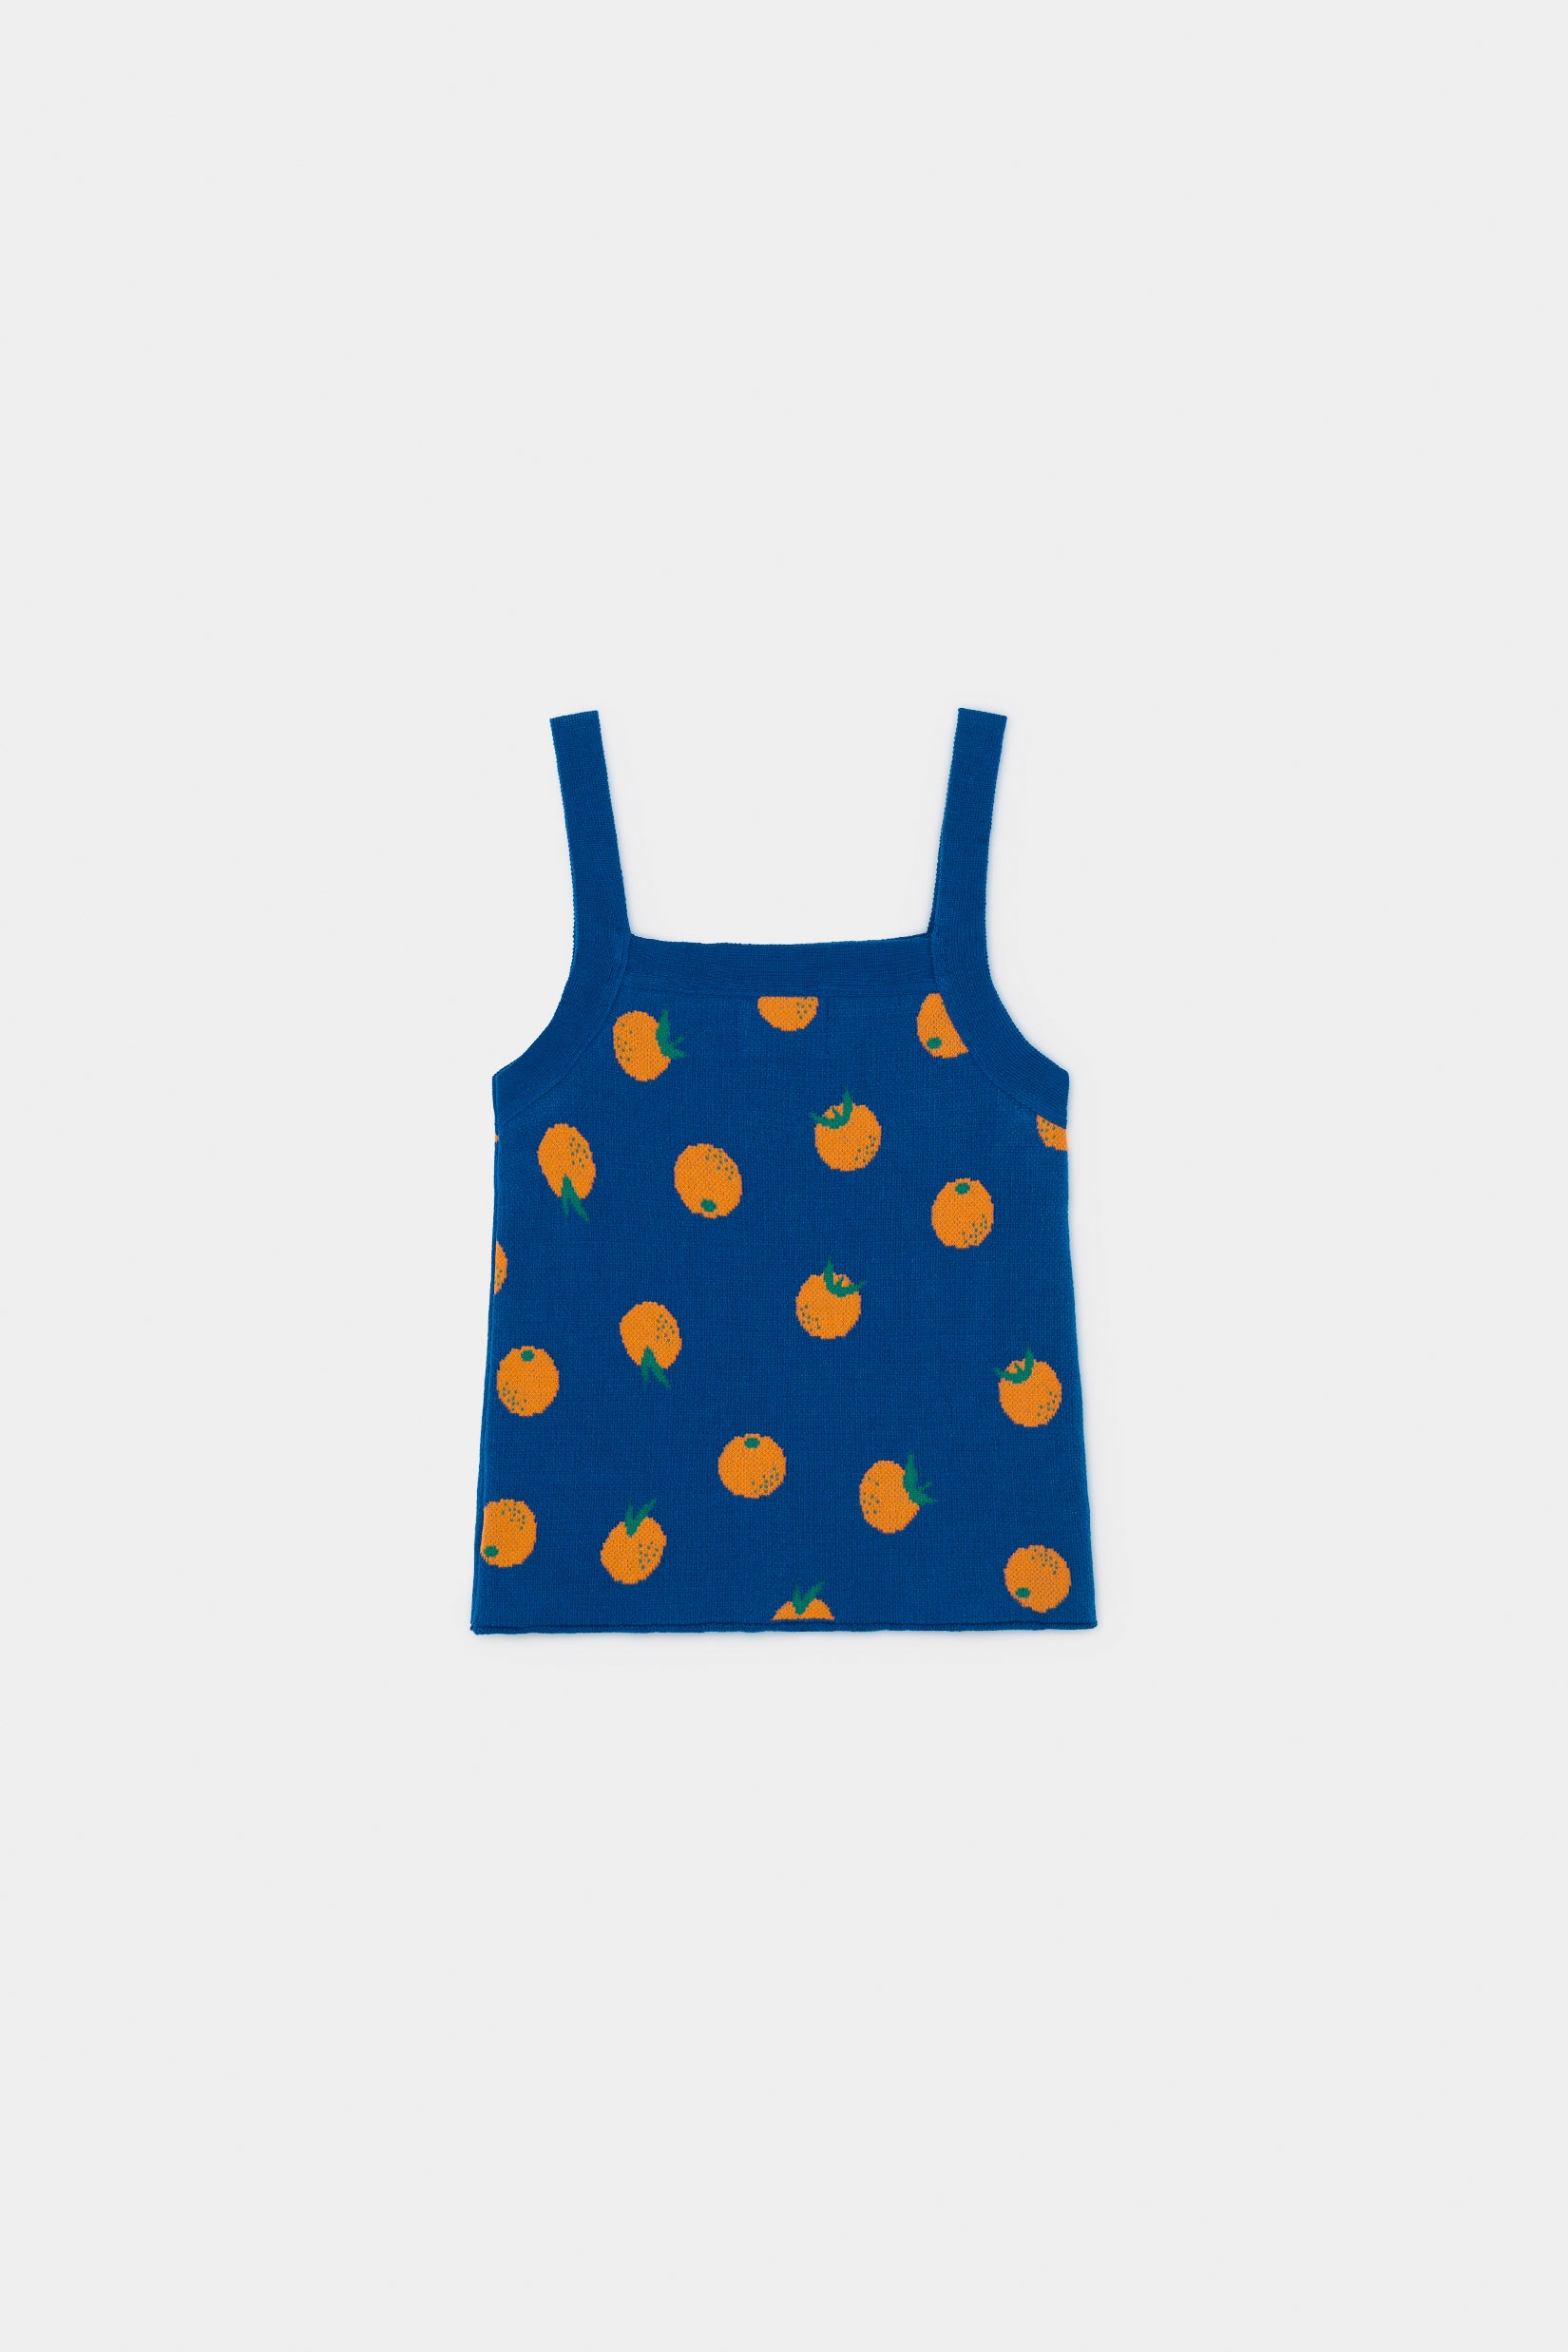 Girls Blue Orange Knitted Tank Top